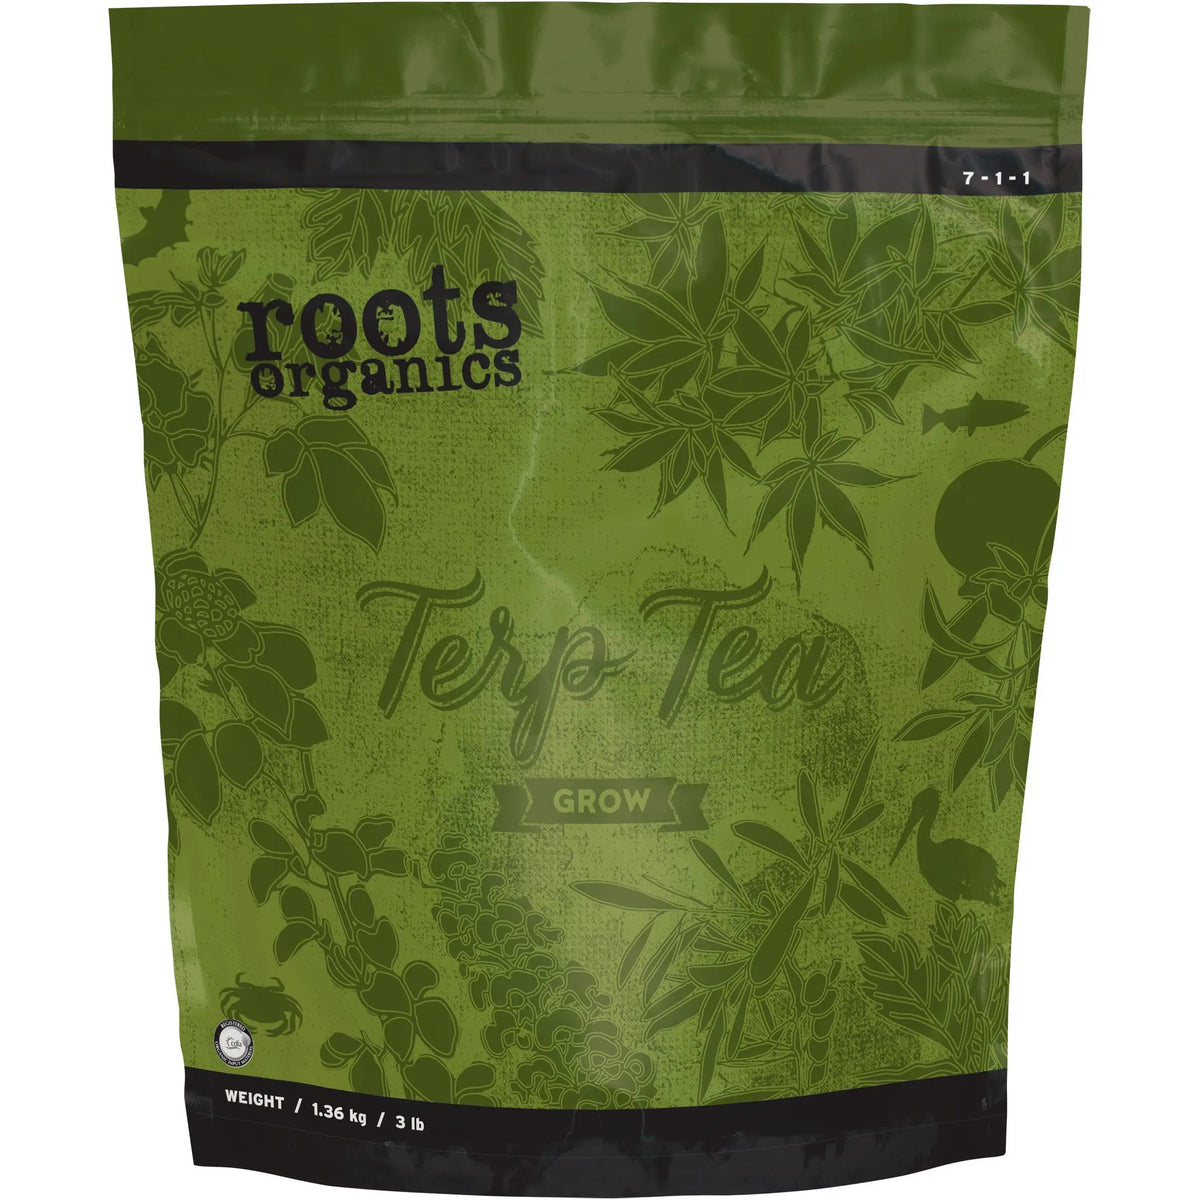 Roots Organics Terp Tea Grow, 3 lb Roots Organics